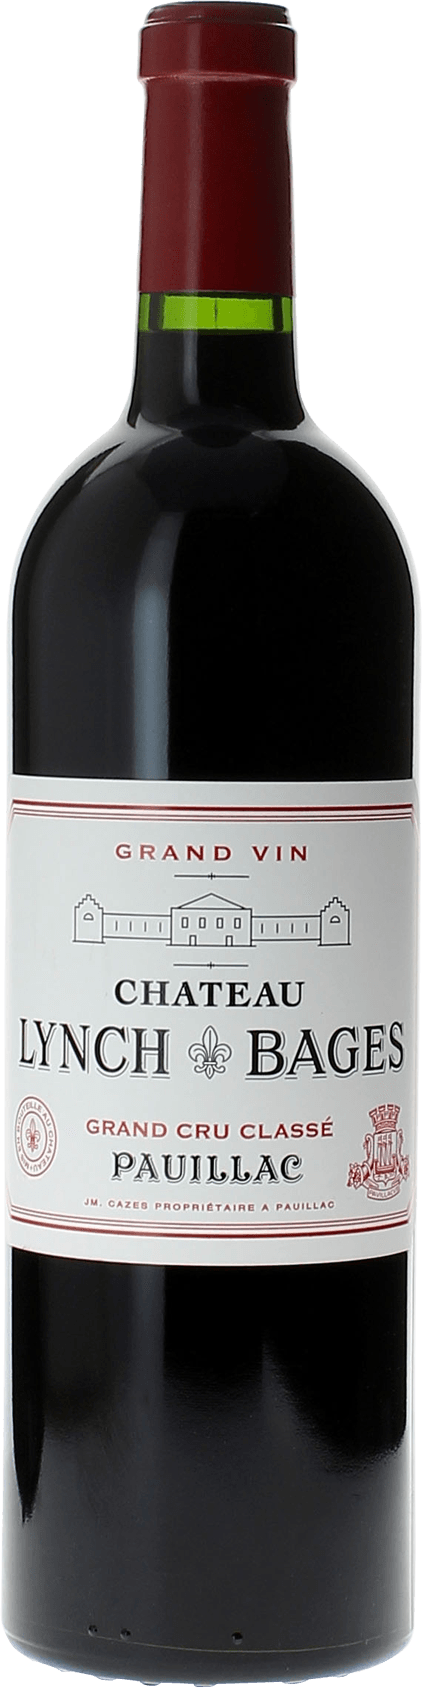 Lynch bages 1989 5 me Grand cru class Pauillac, Bordeaux rouge